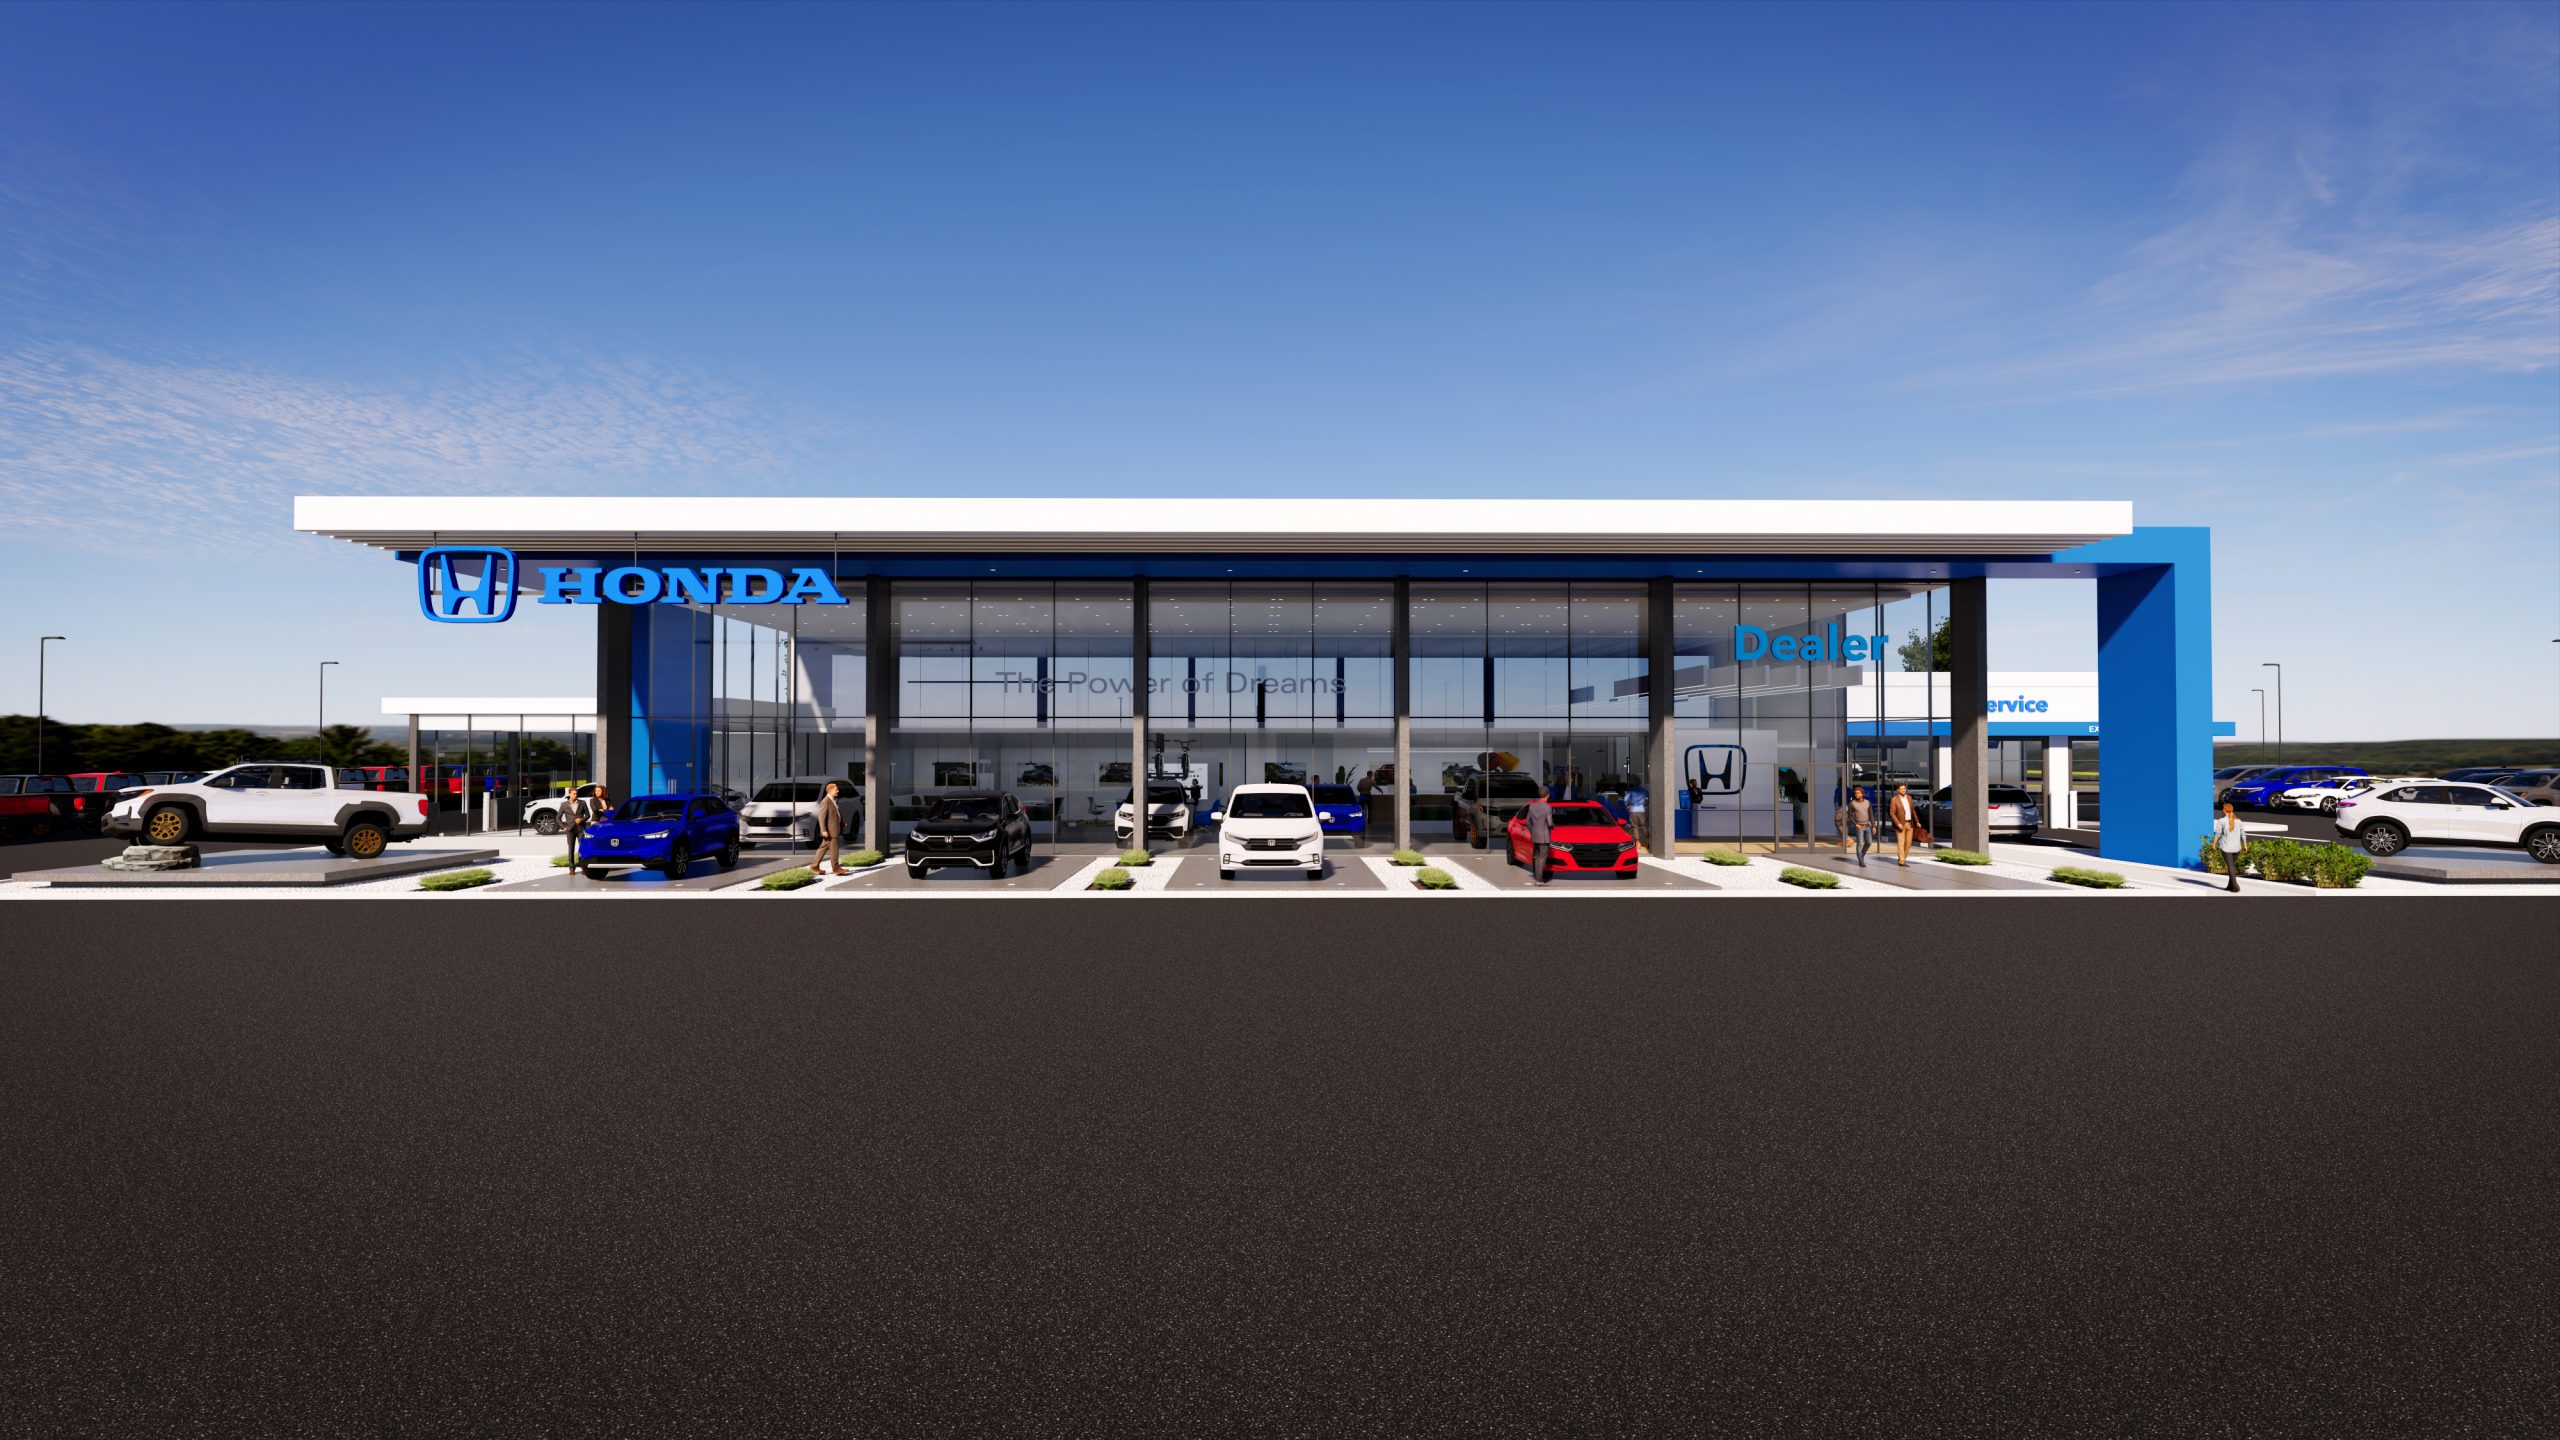 New Honda Facility Design Image_Elevation